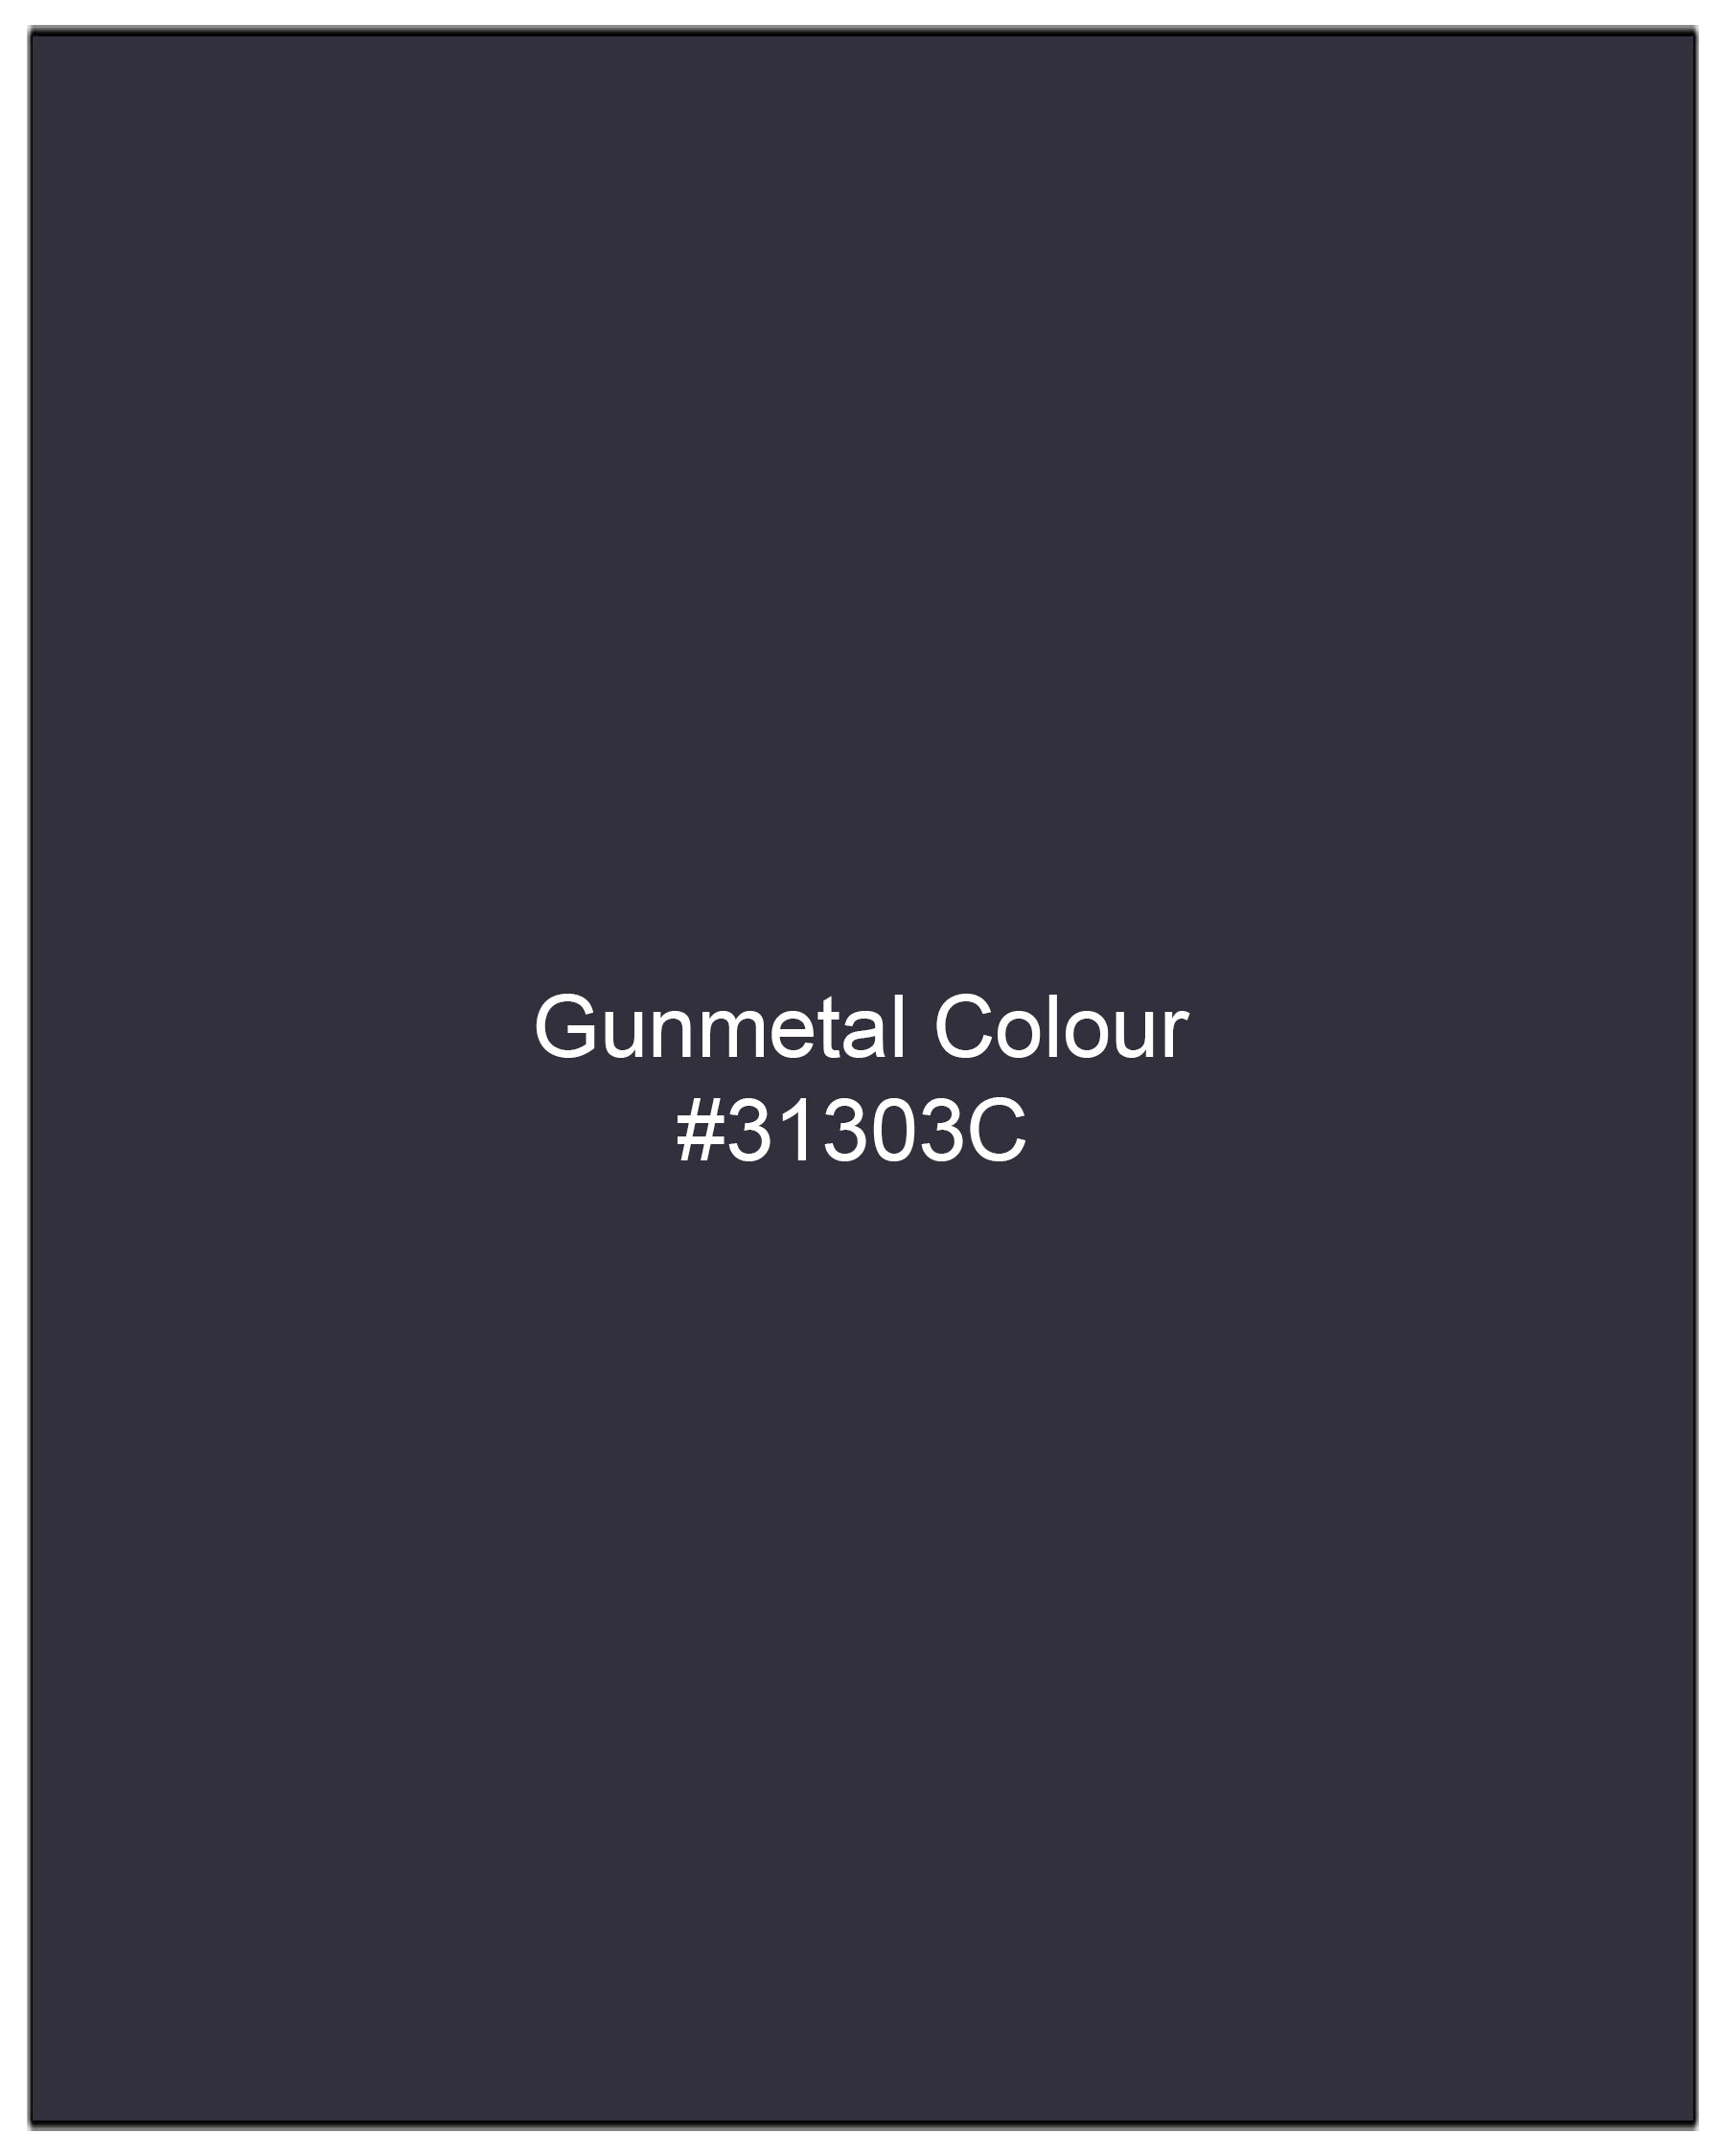 Gunmetal Blue Solid Nehru Jacket WC1973-36, WC1973-38, WC1973-40, WC1973-42, WC1973-44, WC1973-46, WC1973-48, WC1973-50, WC1973-52, WC1973-54, WC1973-56, WC1973-58, WC1973-60